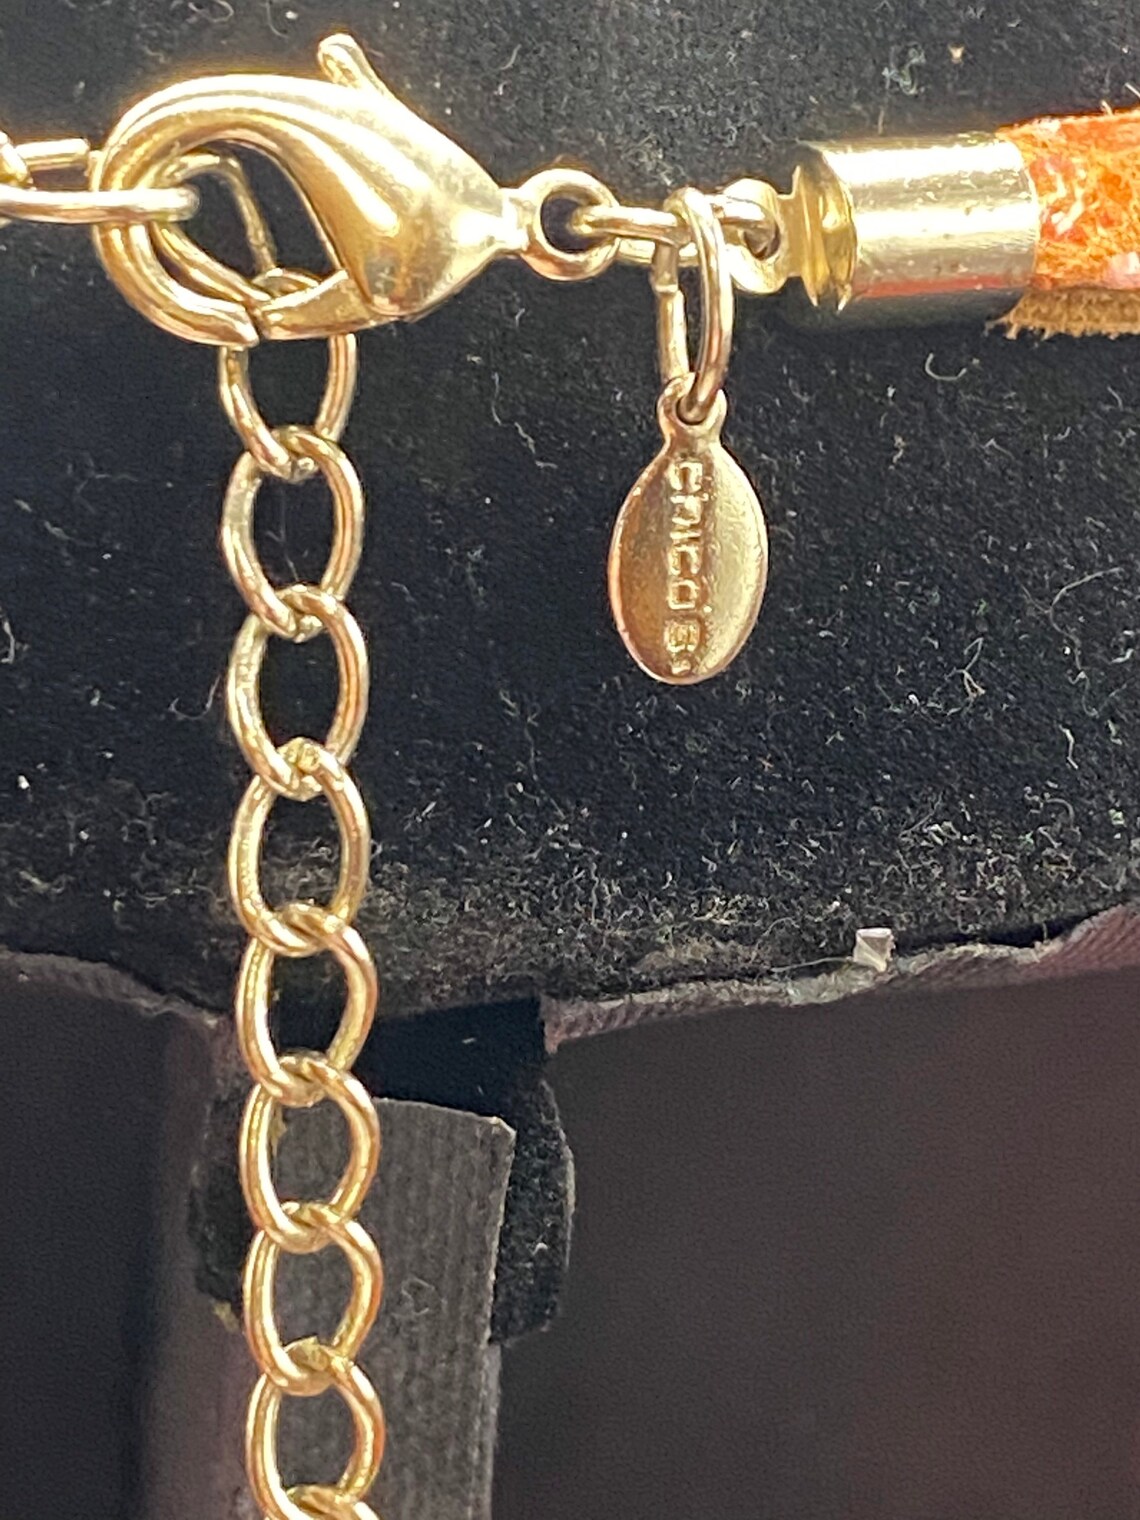 Chicos Large Beaded Orange Necklace w/Medallion | Etsy